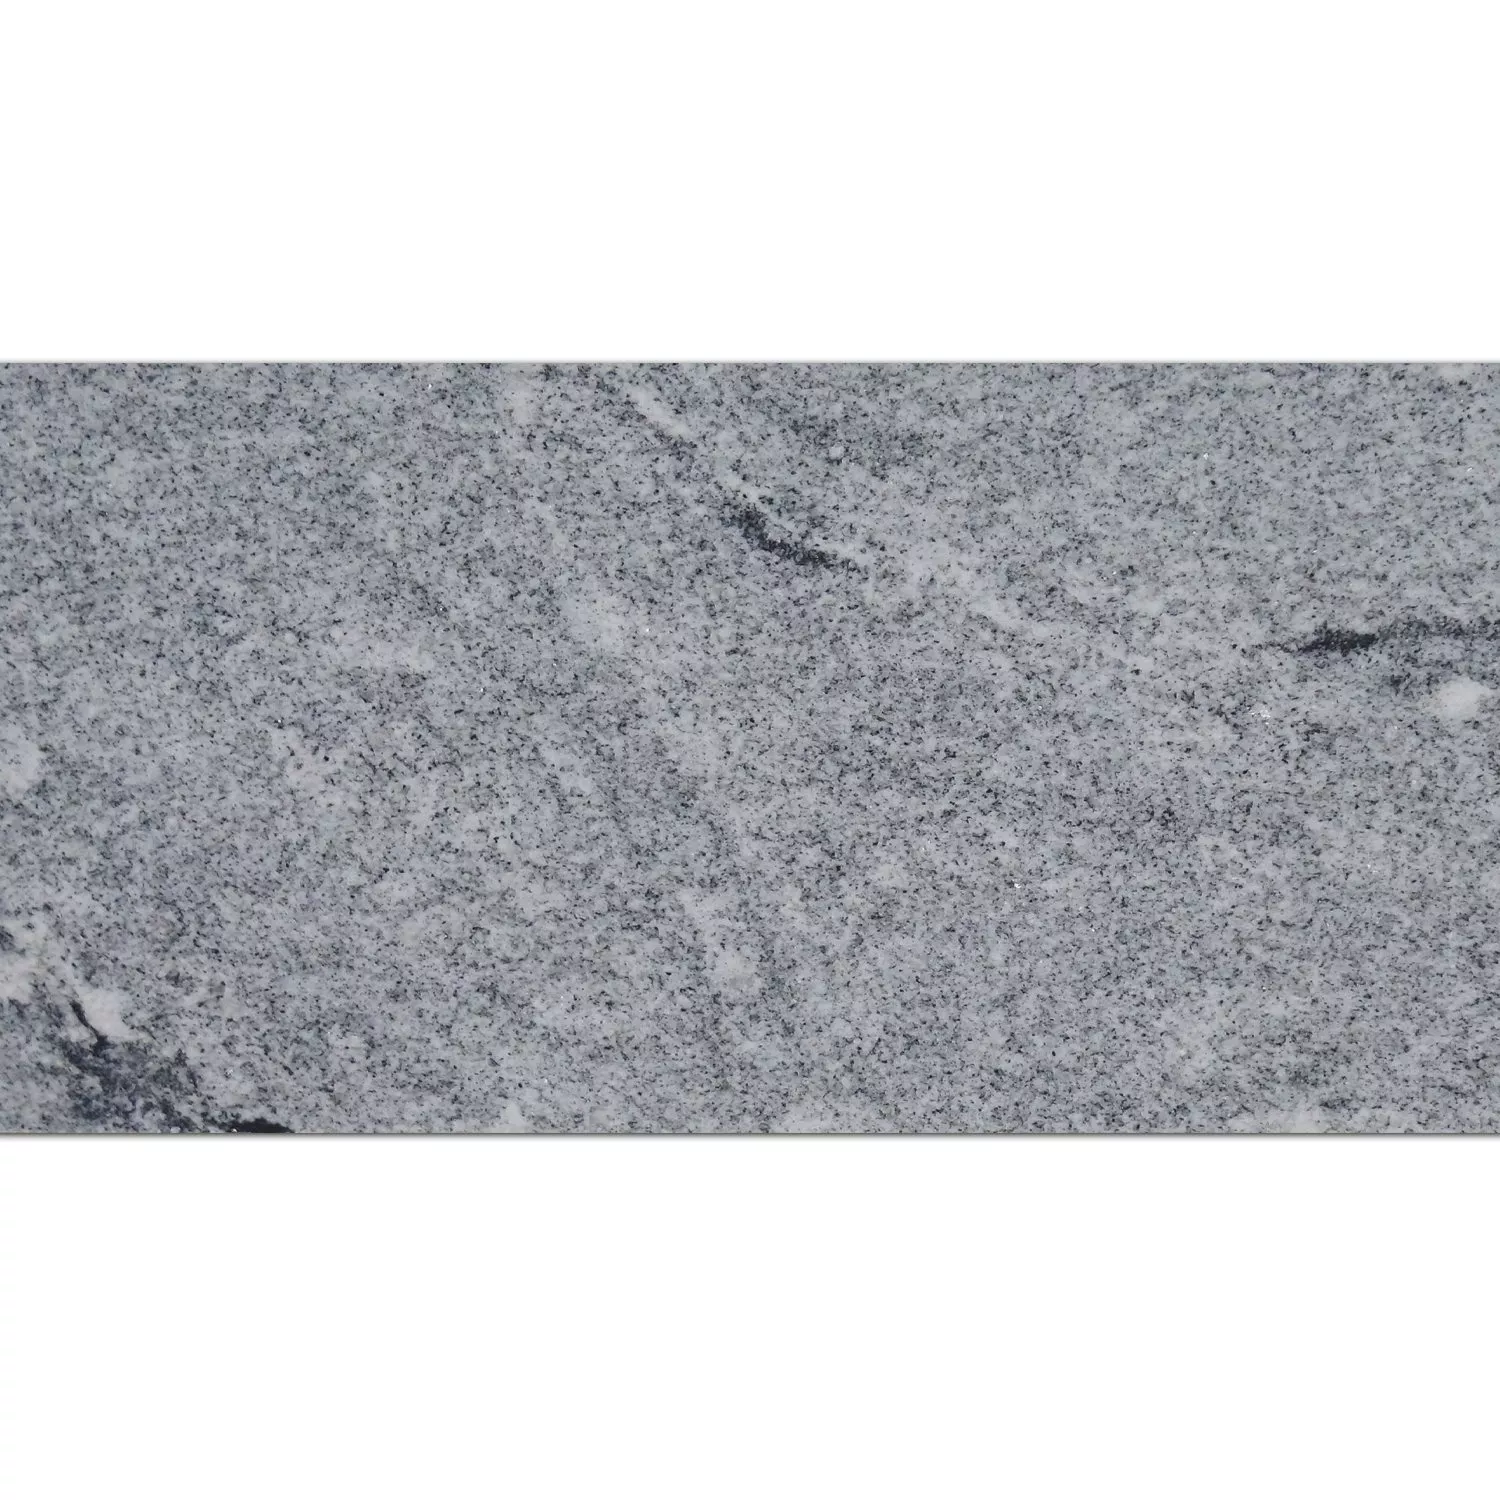 Πλακάκια Aπό Φυσική Πέτρα Γρανίτης Viscont White Αμεμπτος 30,5x61cm